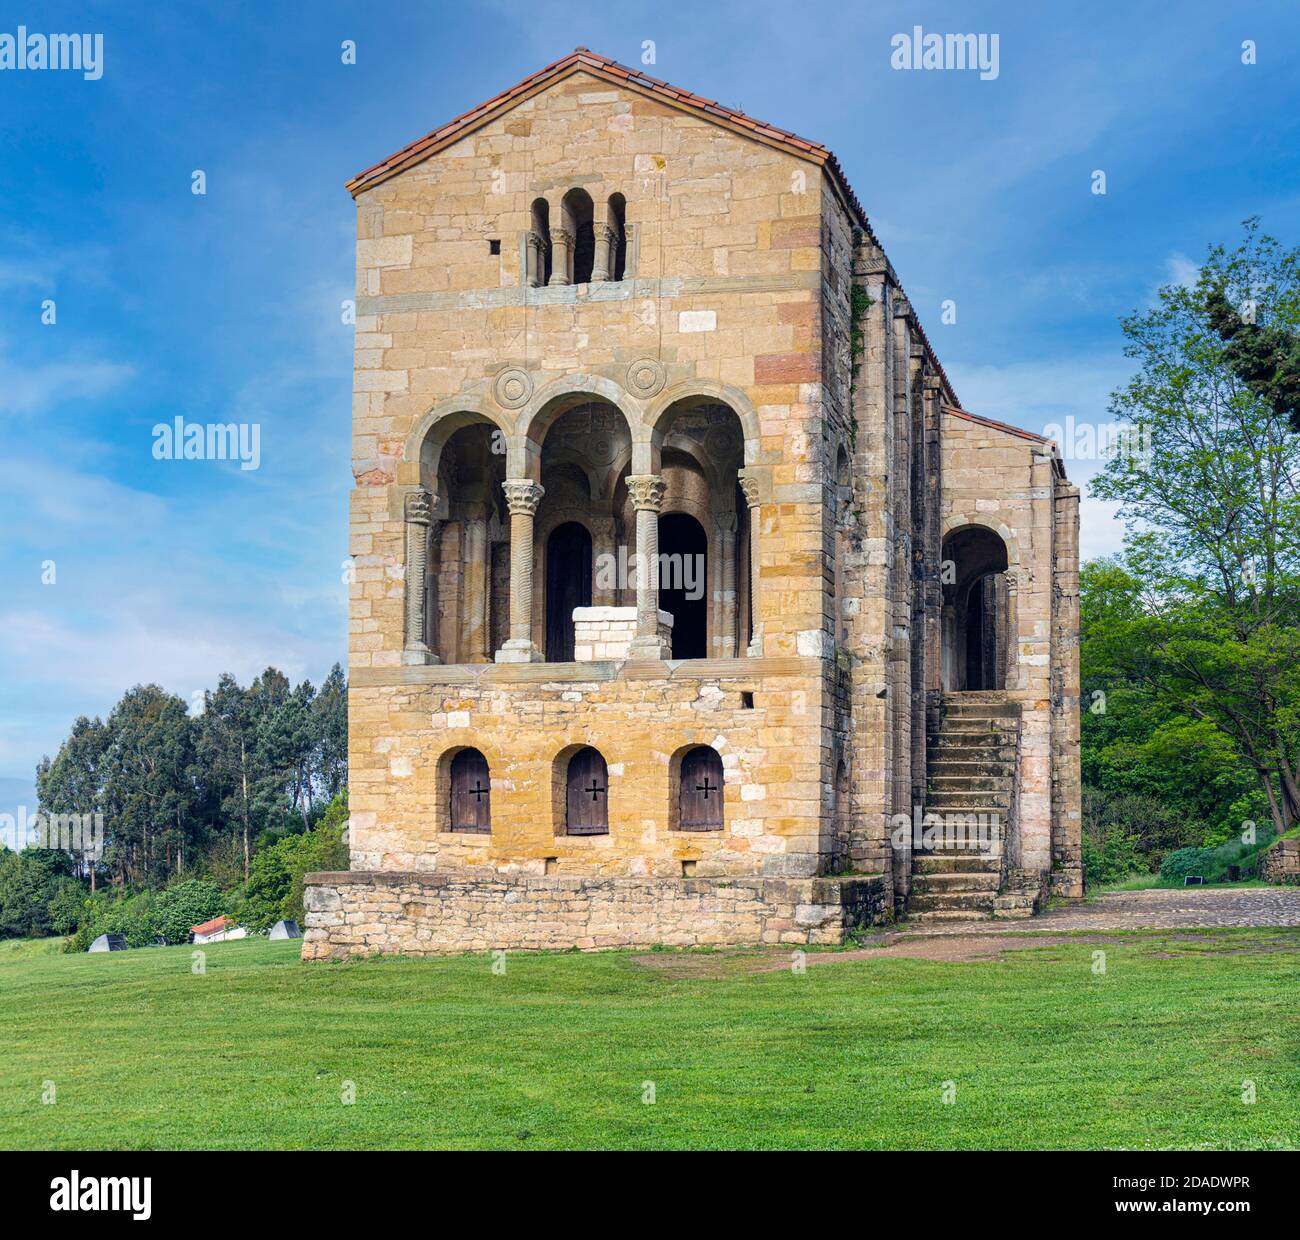 Église préromane de Santa Maria del Naranco, Oviedo, Asturies, Espagne. Santa Maria del Naranco fait partie du site de Monumen, classé au patrimoine mondial de l'UNESCO Banque D'Images